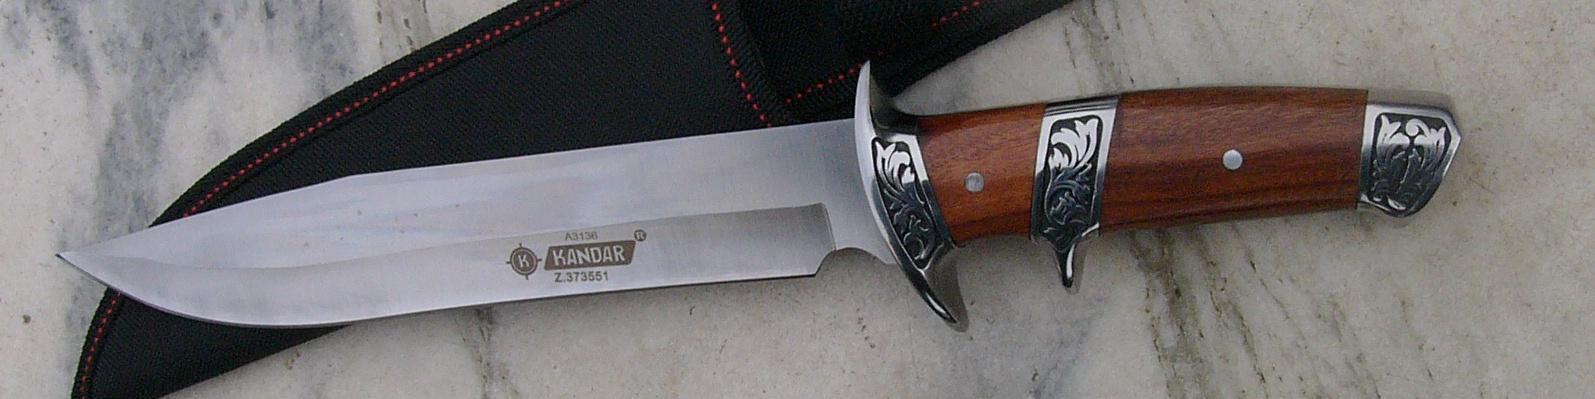 Lovecký nůž KANDAR 33 cm   - Střelba a myslivost